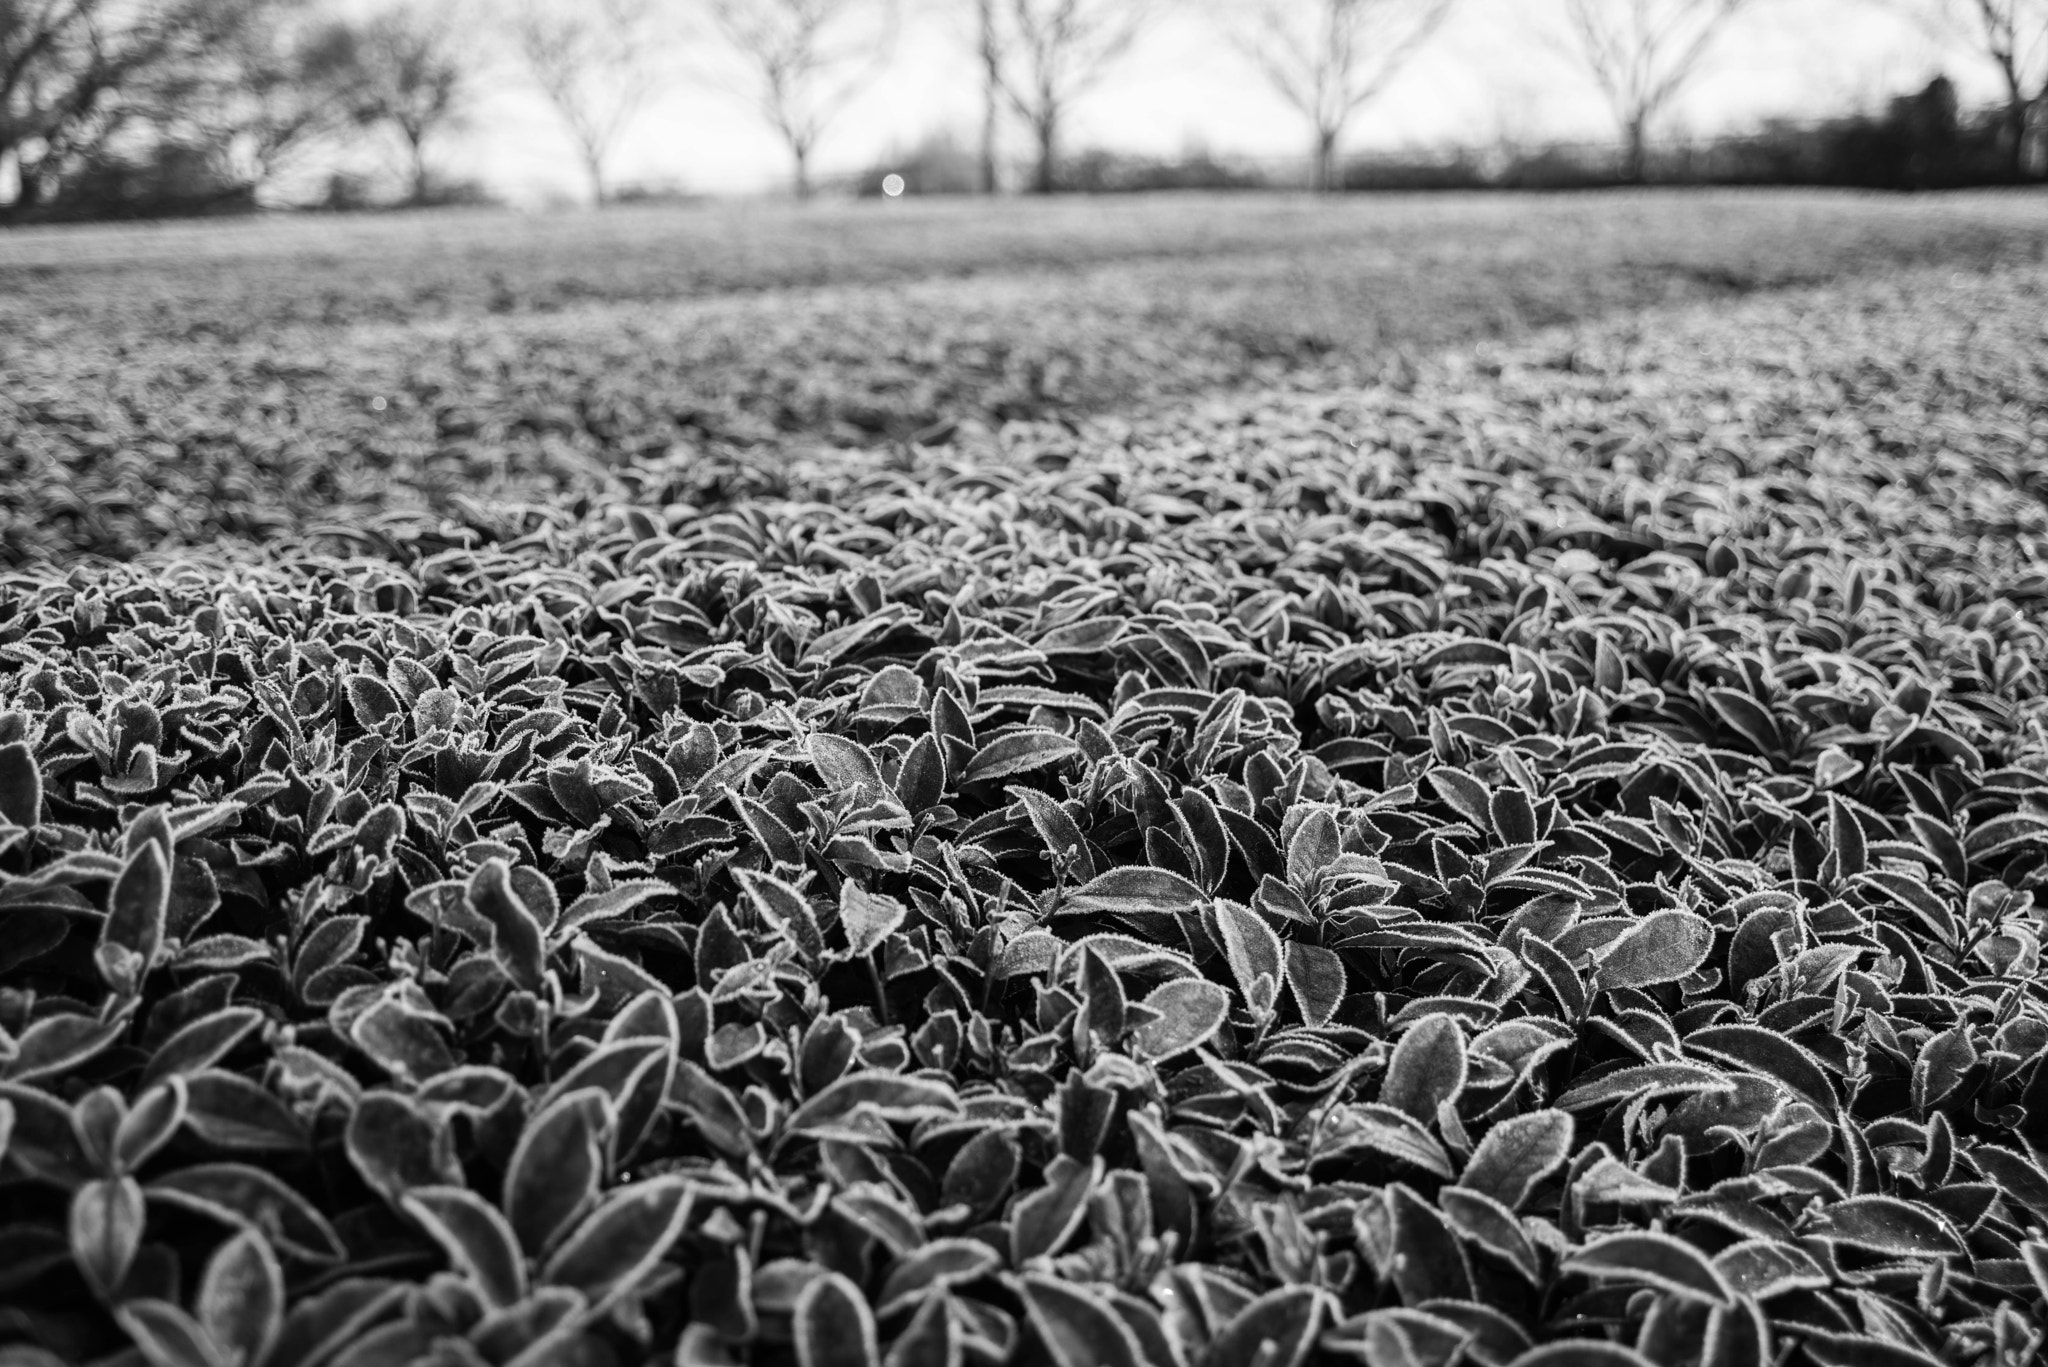 Nikon D810 + AF Zoom-Nikkor 28-105mm f/3.5-4.5D IF sample photo. Frosted tea plant photography